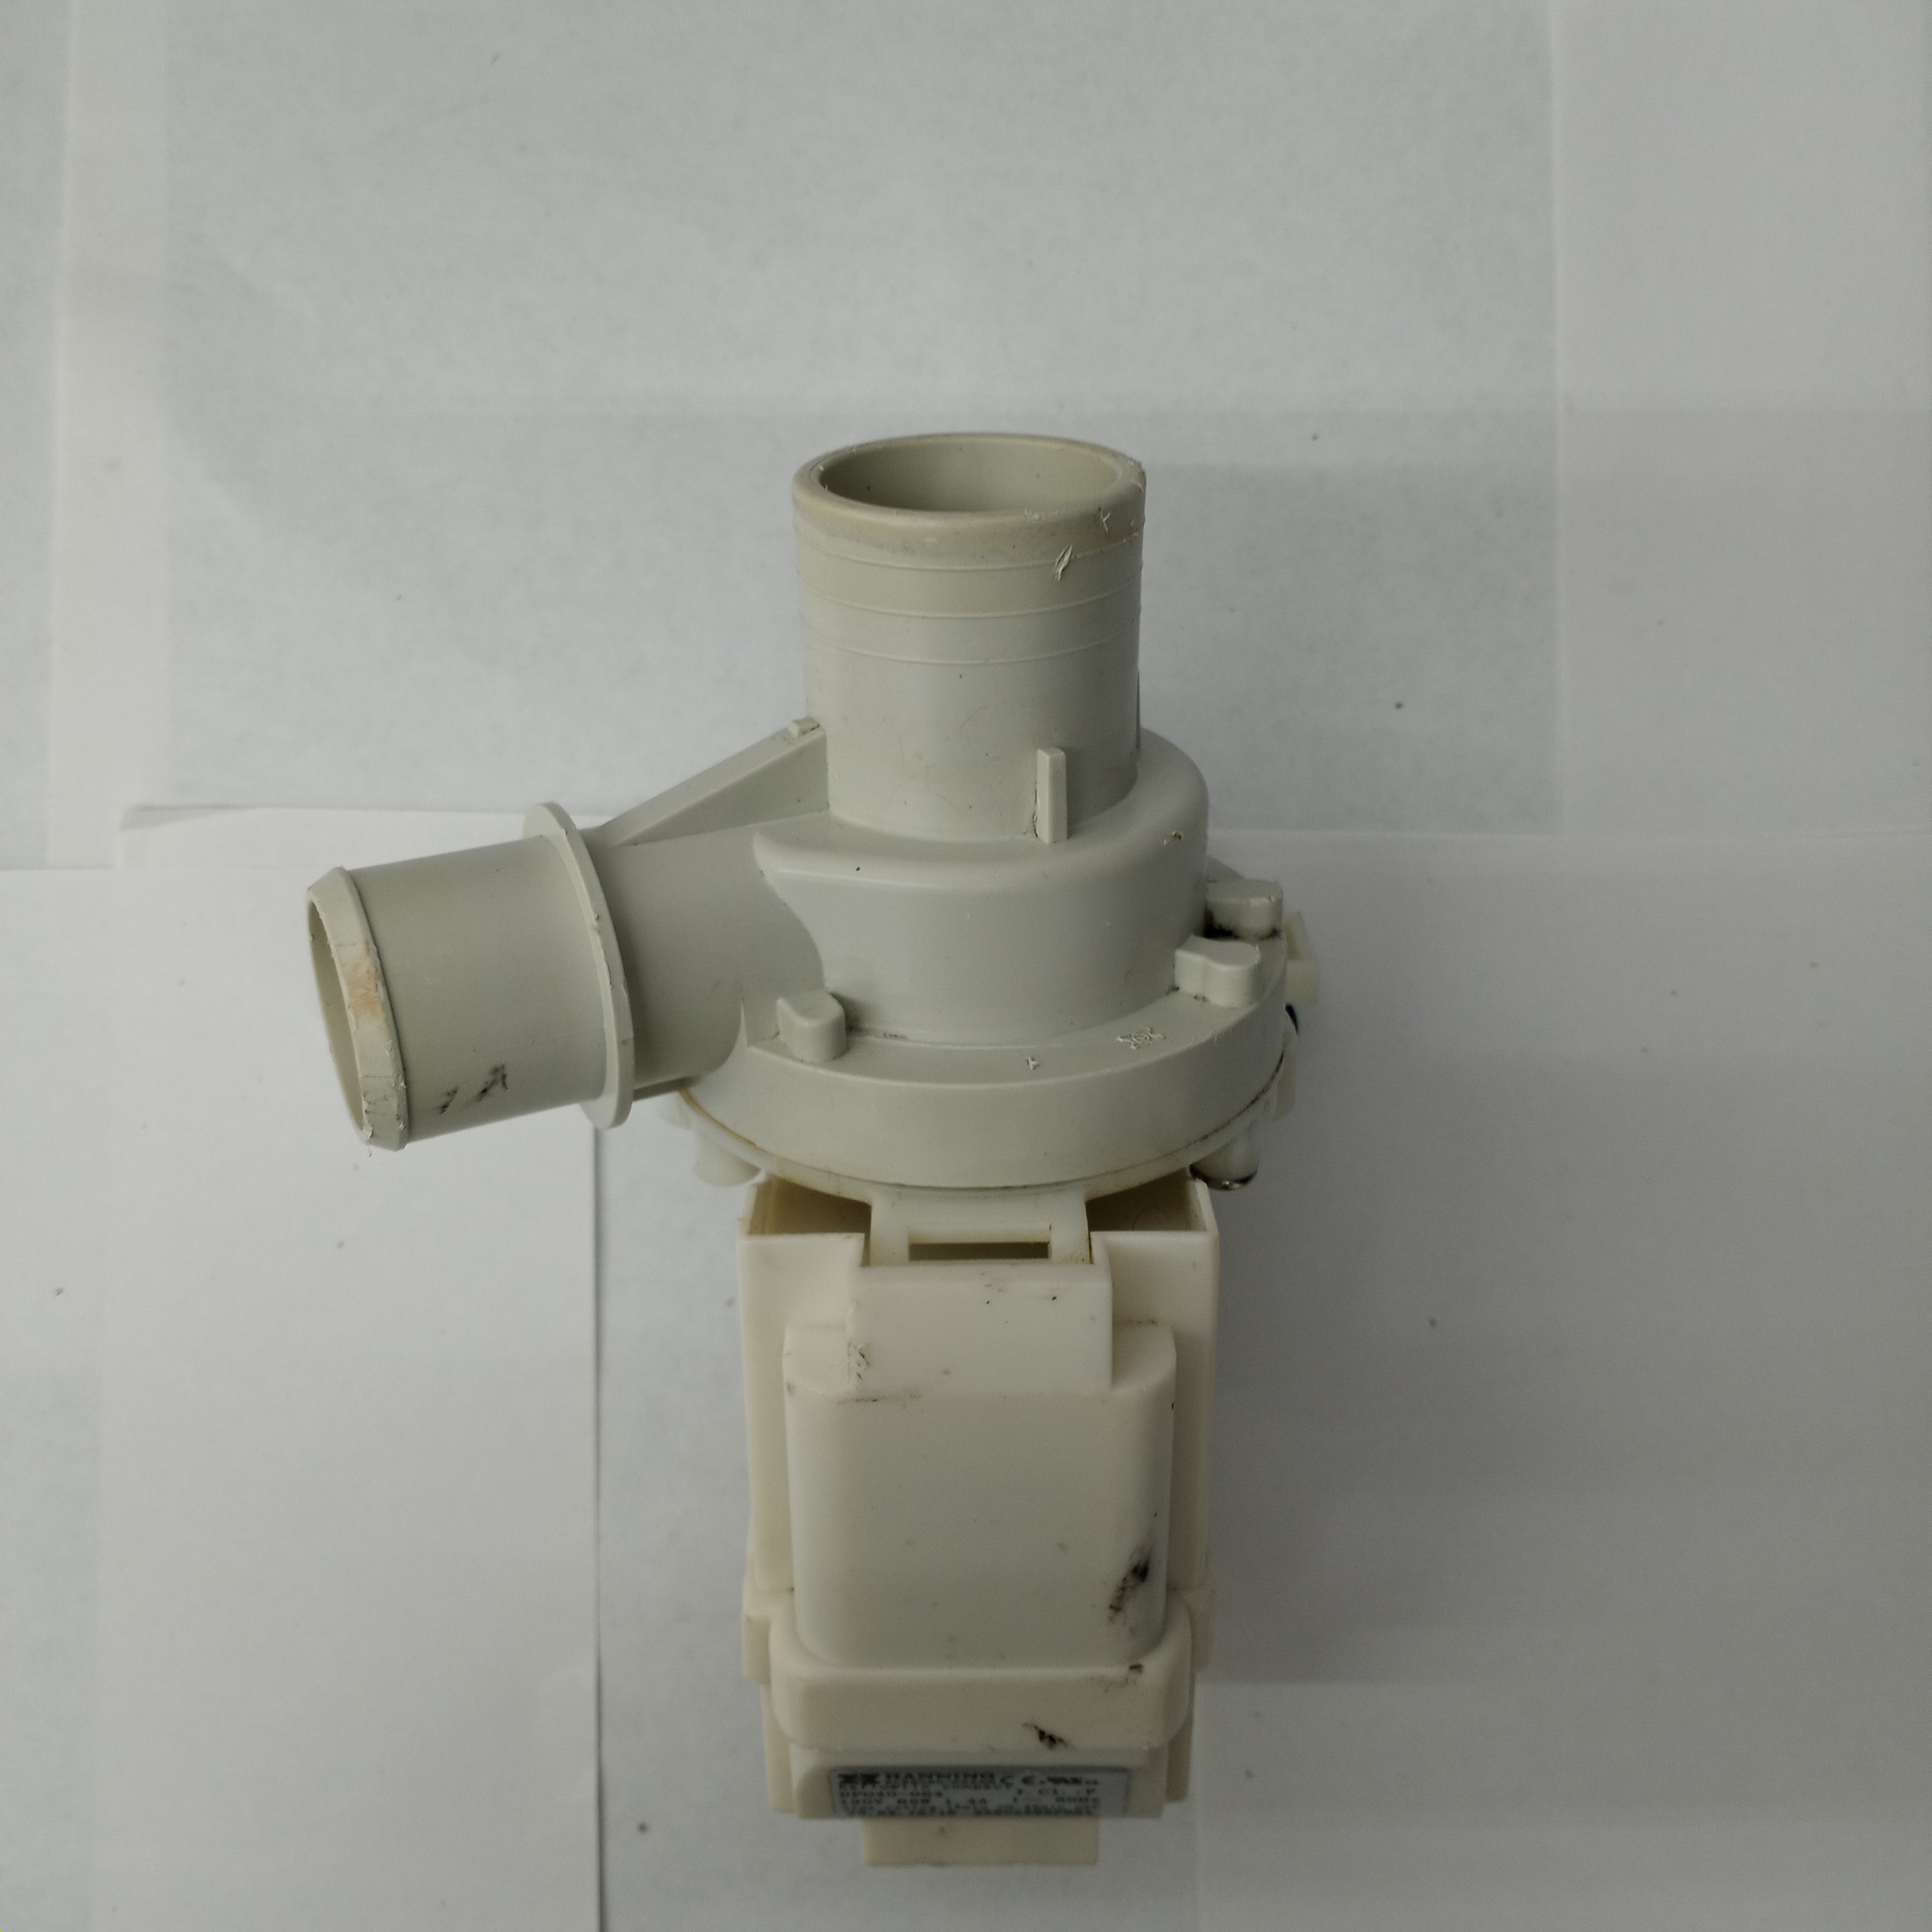 GE-Washer-Water-Pump-Motor-DP040-064